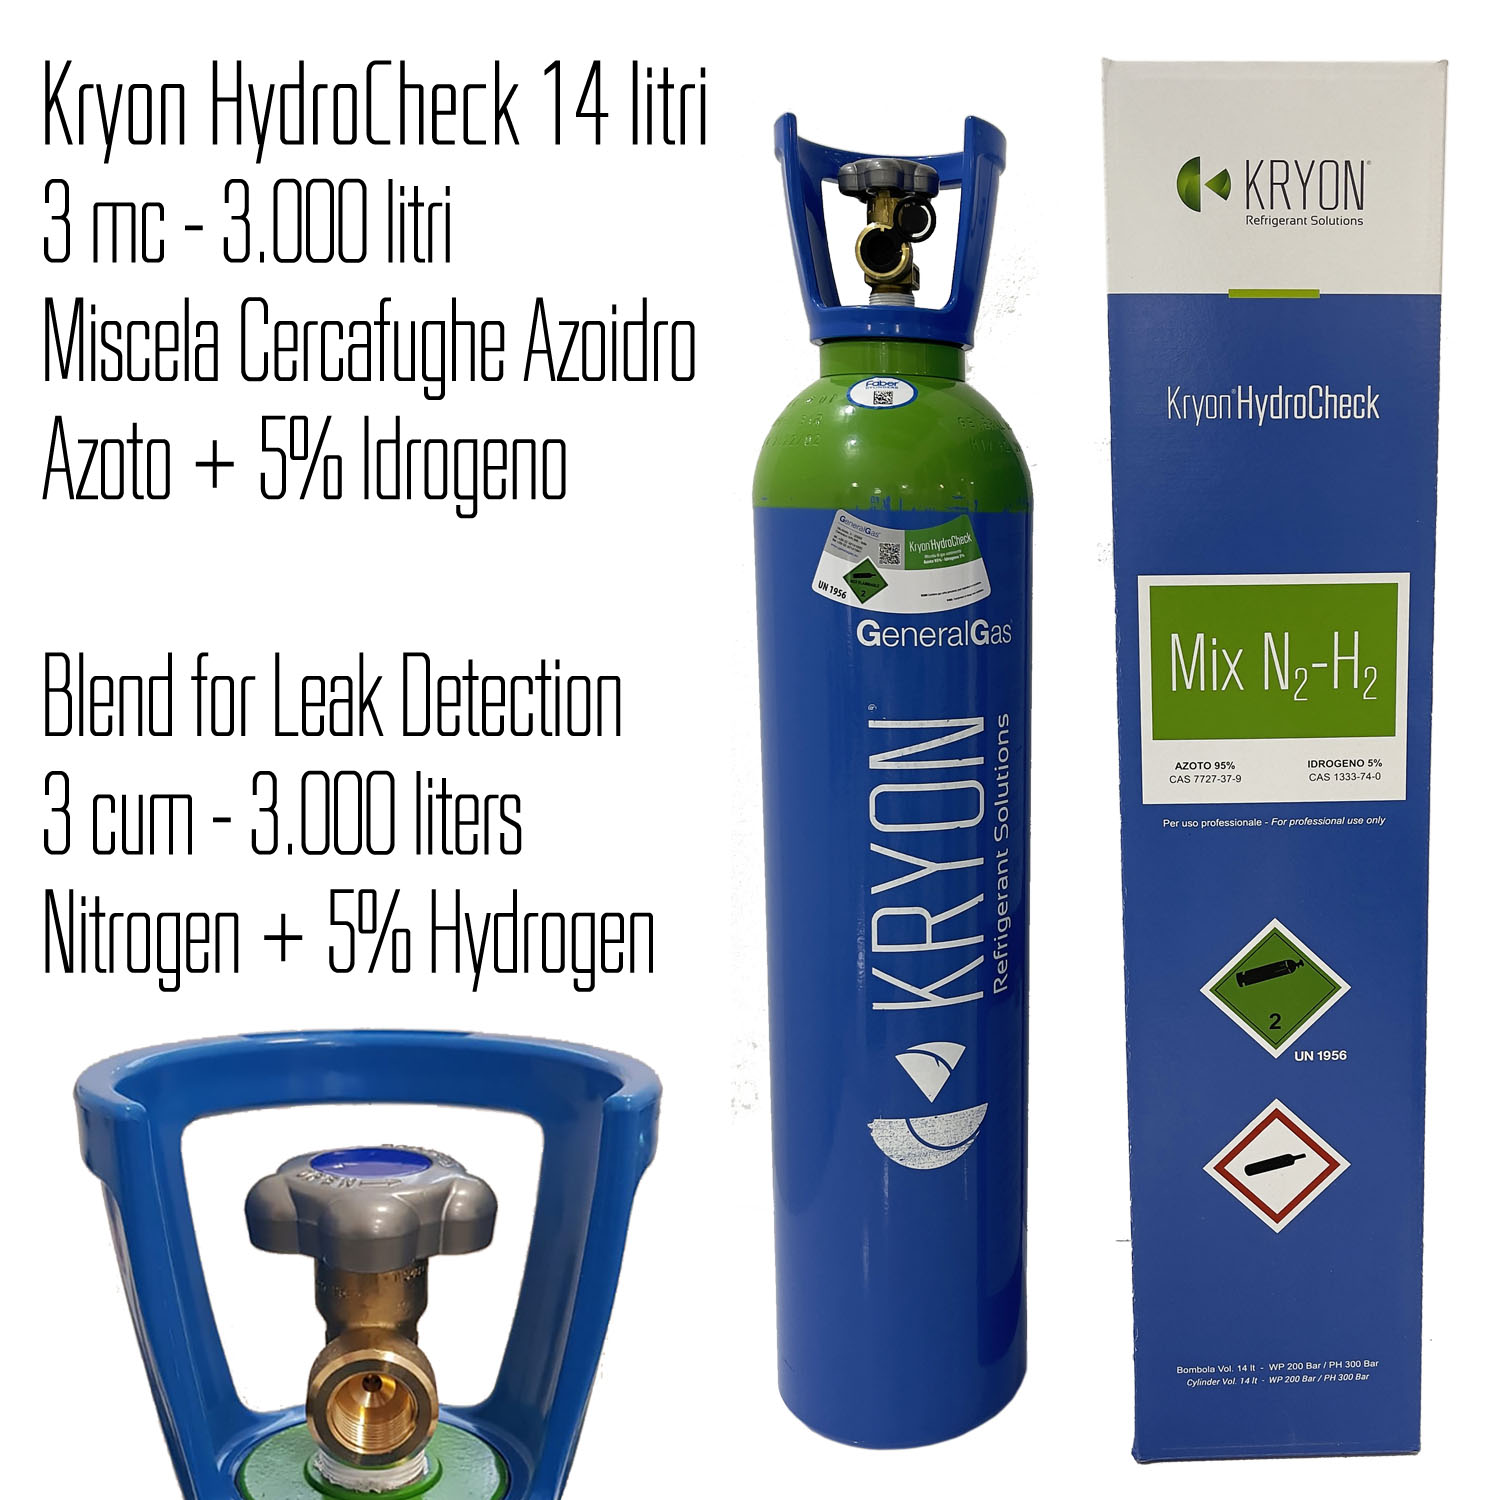 Kryon® HydroCheck 3000 lt - bombola azoto 5% idrogeno (miscela cercafughe azoidro) capacità 14 litri 200 bar - caricata con 3 mc di miscela, completa di valvola